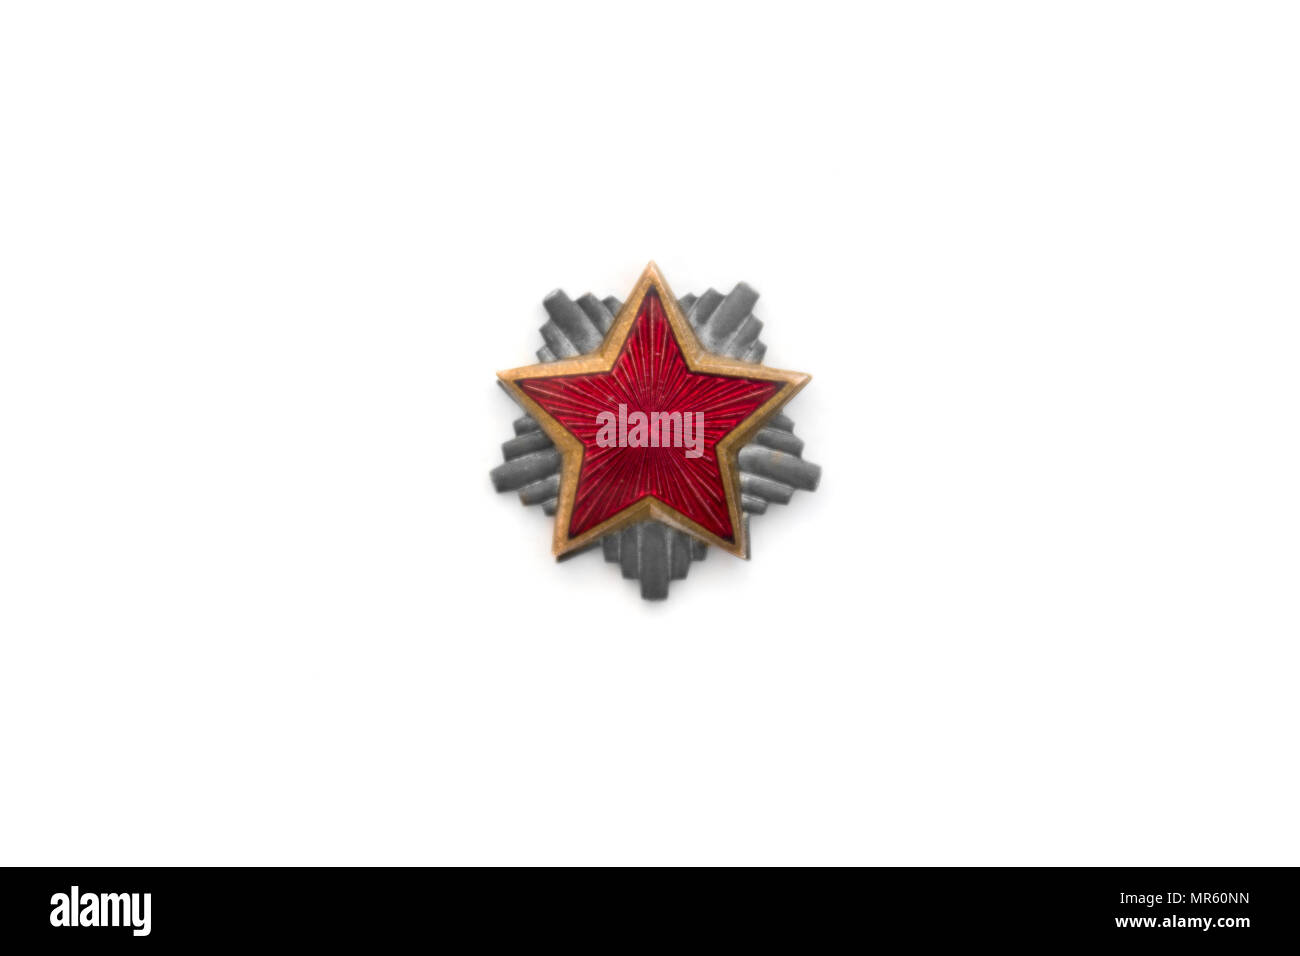 Vecchia stella rossa da comunista cappello militare isolato su sfondo bianco Foto Stock